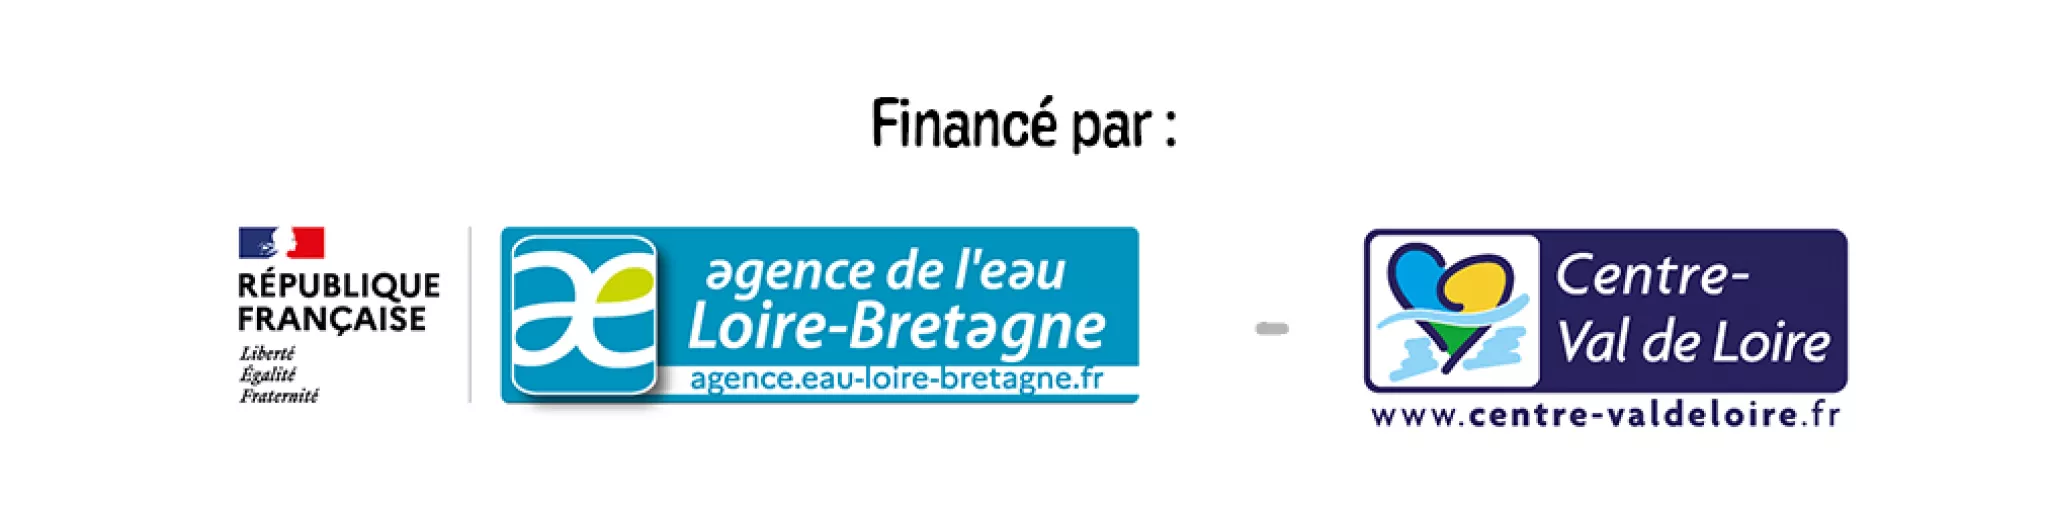 L'Agence de l'eau Loire-Bretagne et la région Centre-Val de Loire finance l'événement ECB